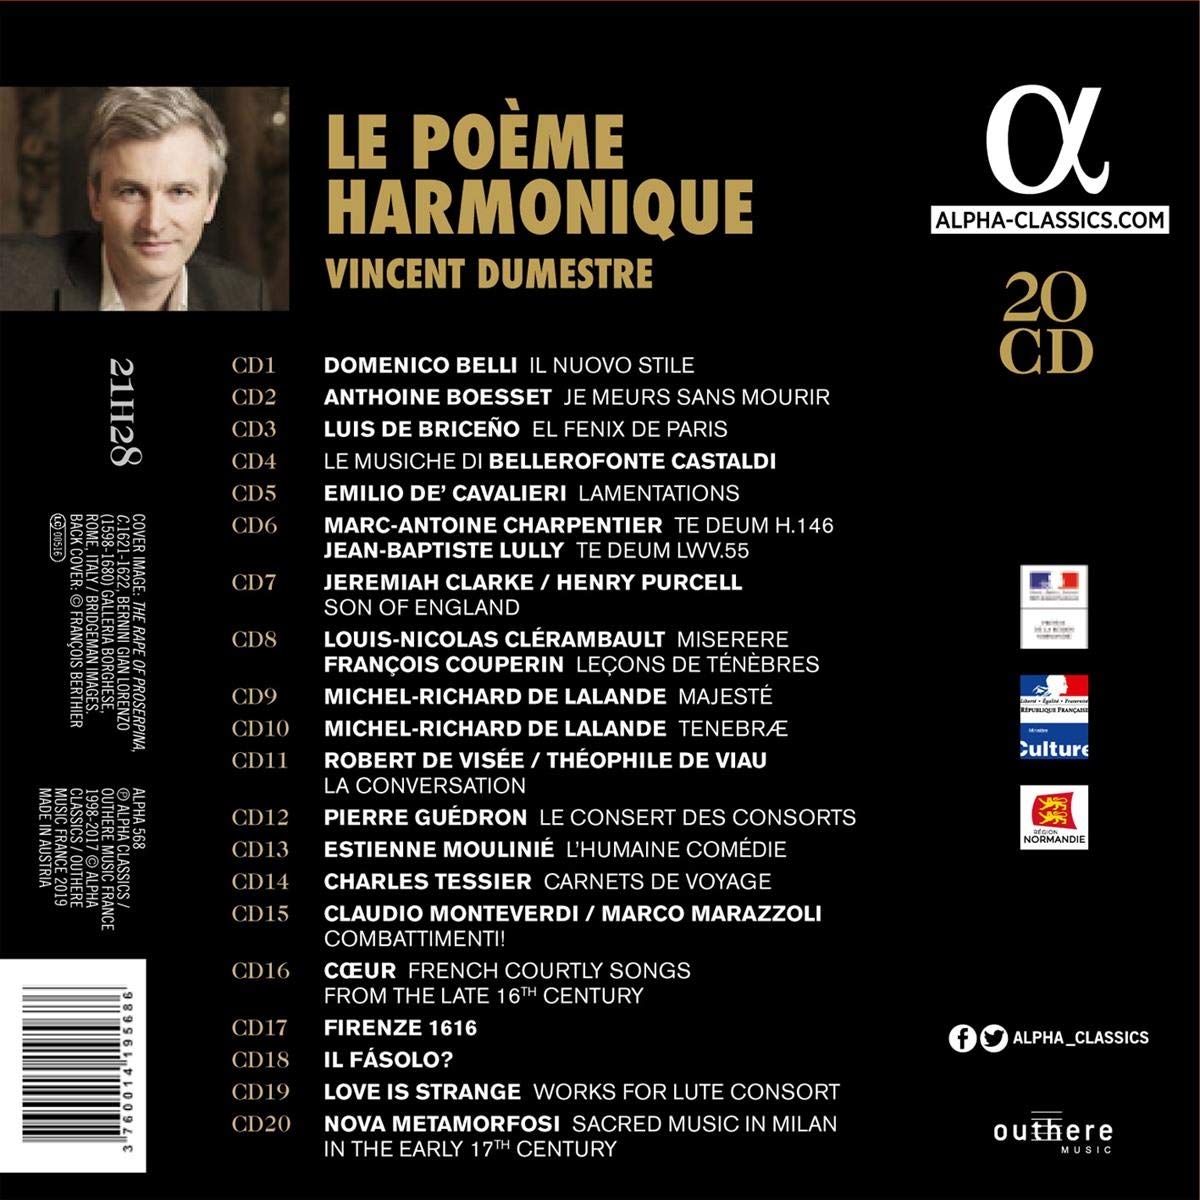 Vincent Dumestre 르 포엠 아르모니크 20주년 기념반 (Le Poeme Harmonique Collection)